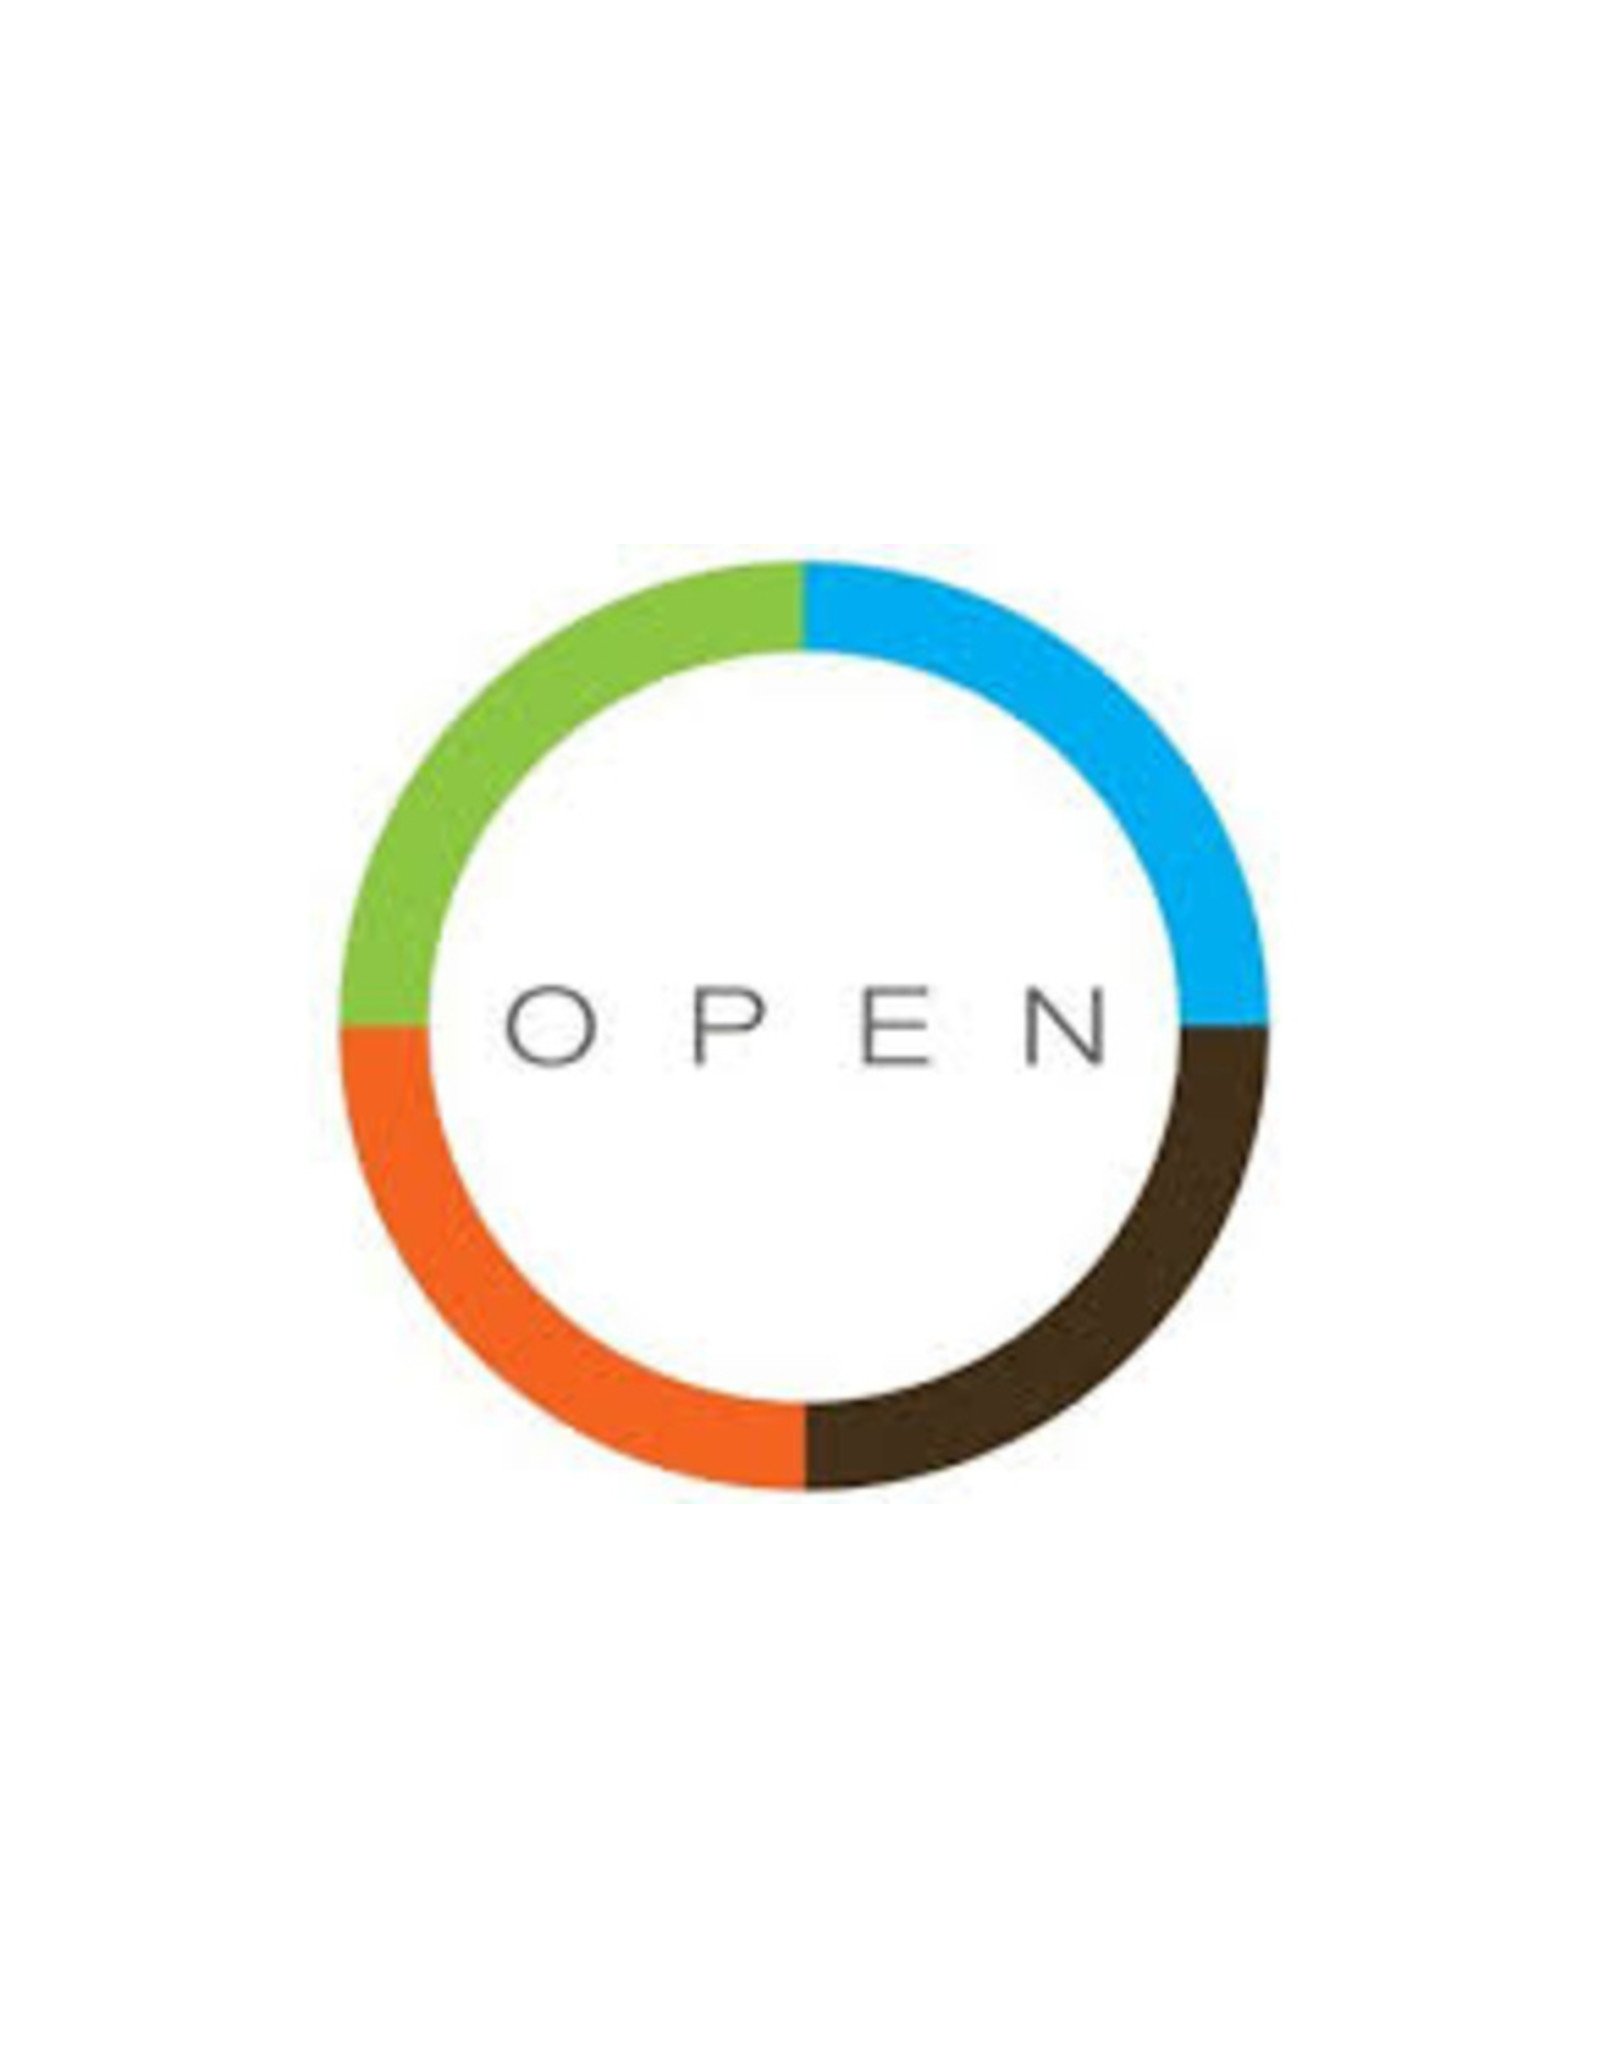 Open Open